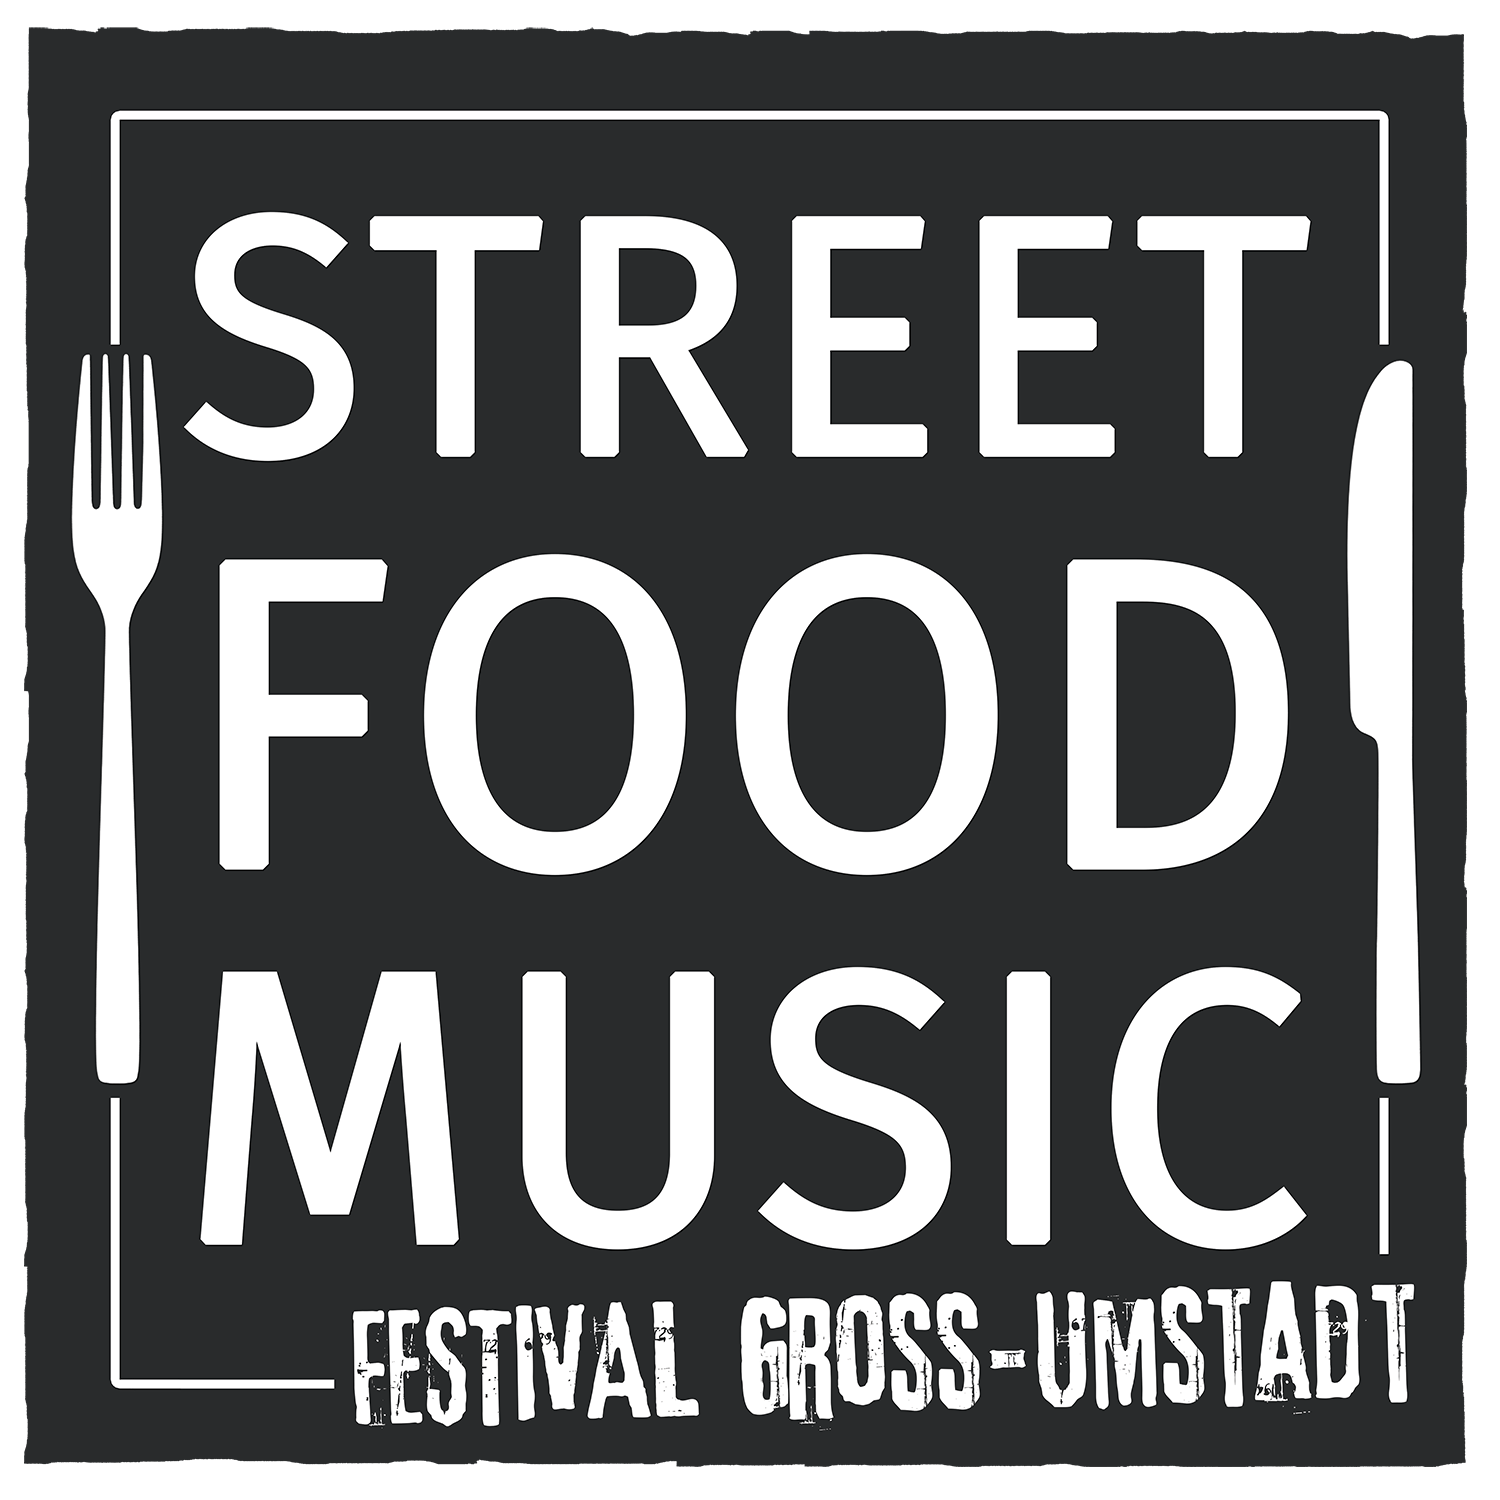 Street Food & Music Festival Groß-Umstadt